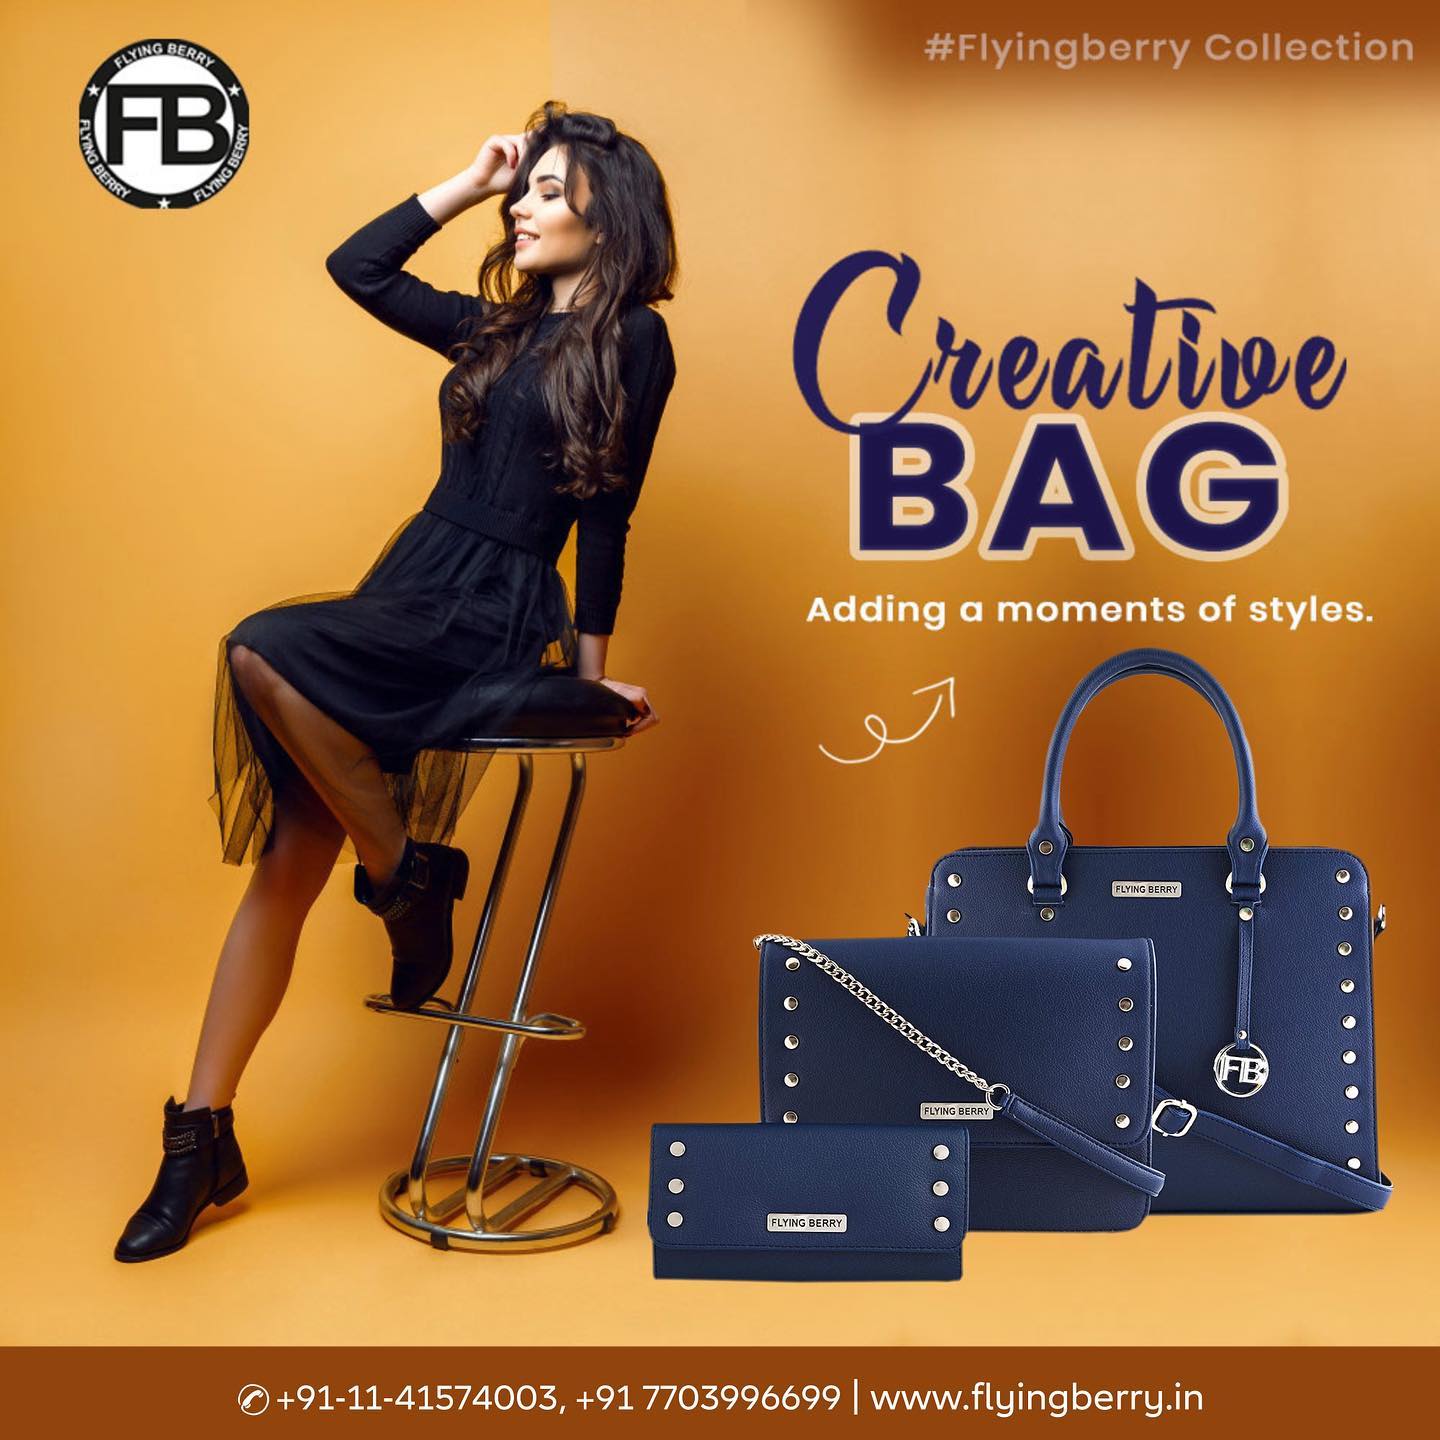 Bag Shop Branding | Advertising Bag Shop | Bag Poster Design